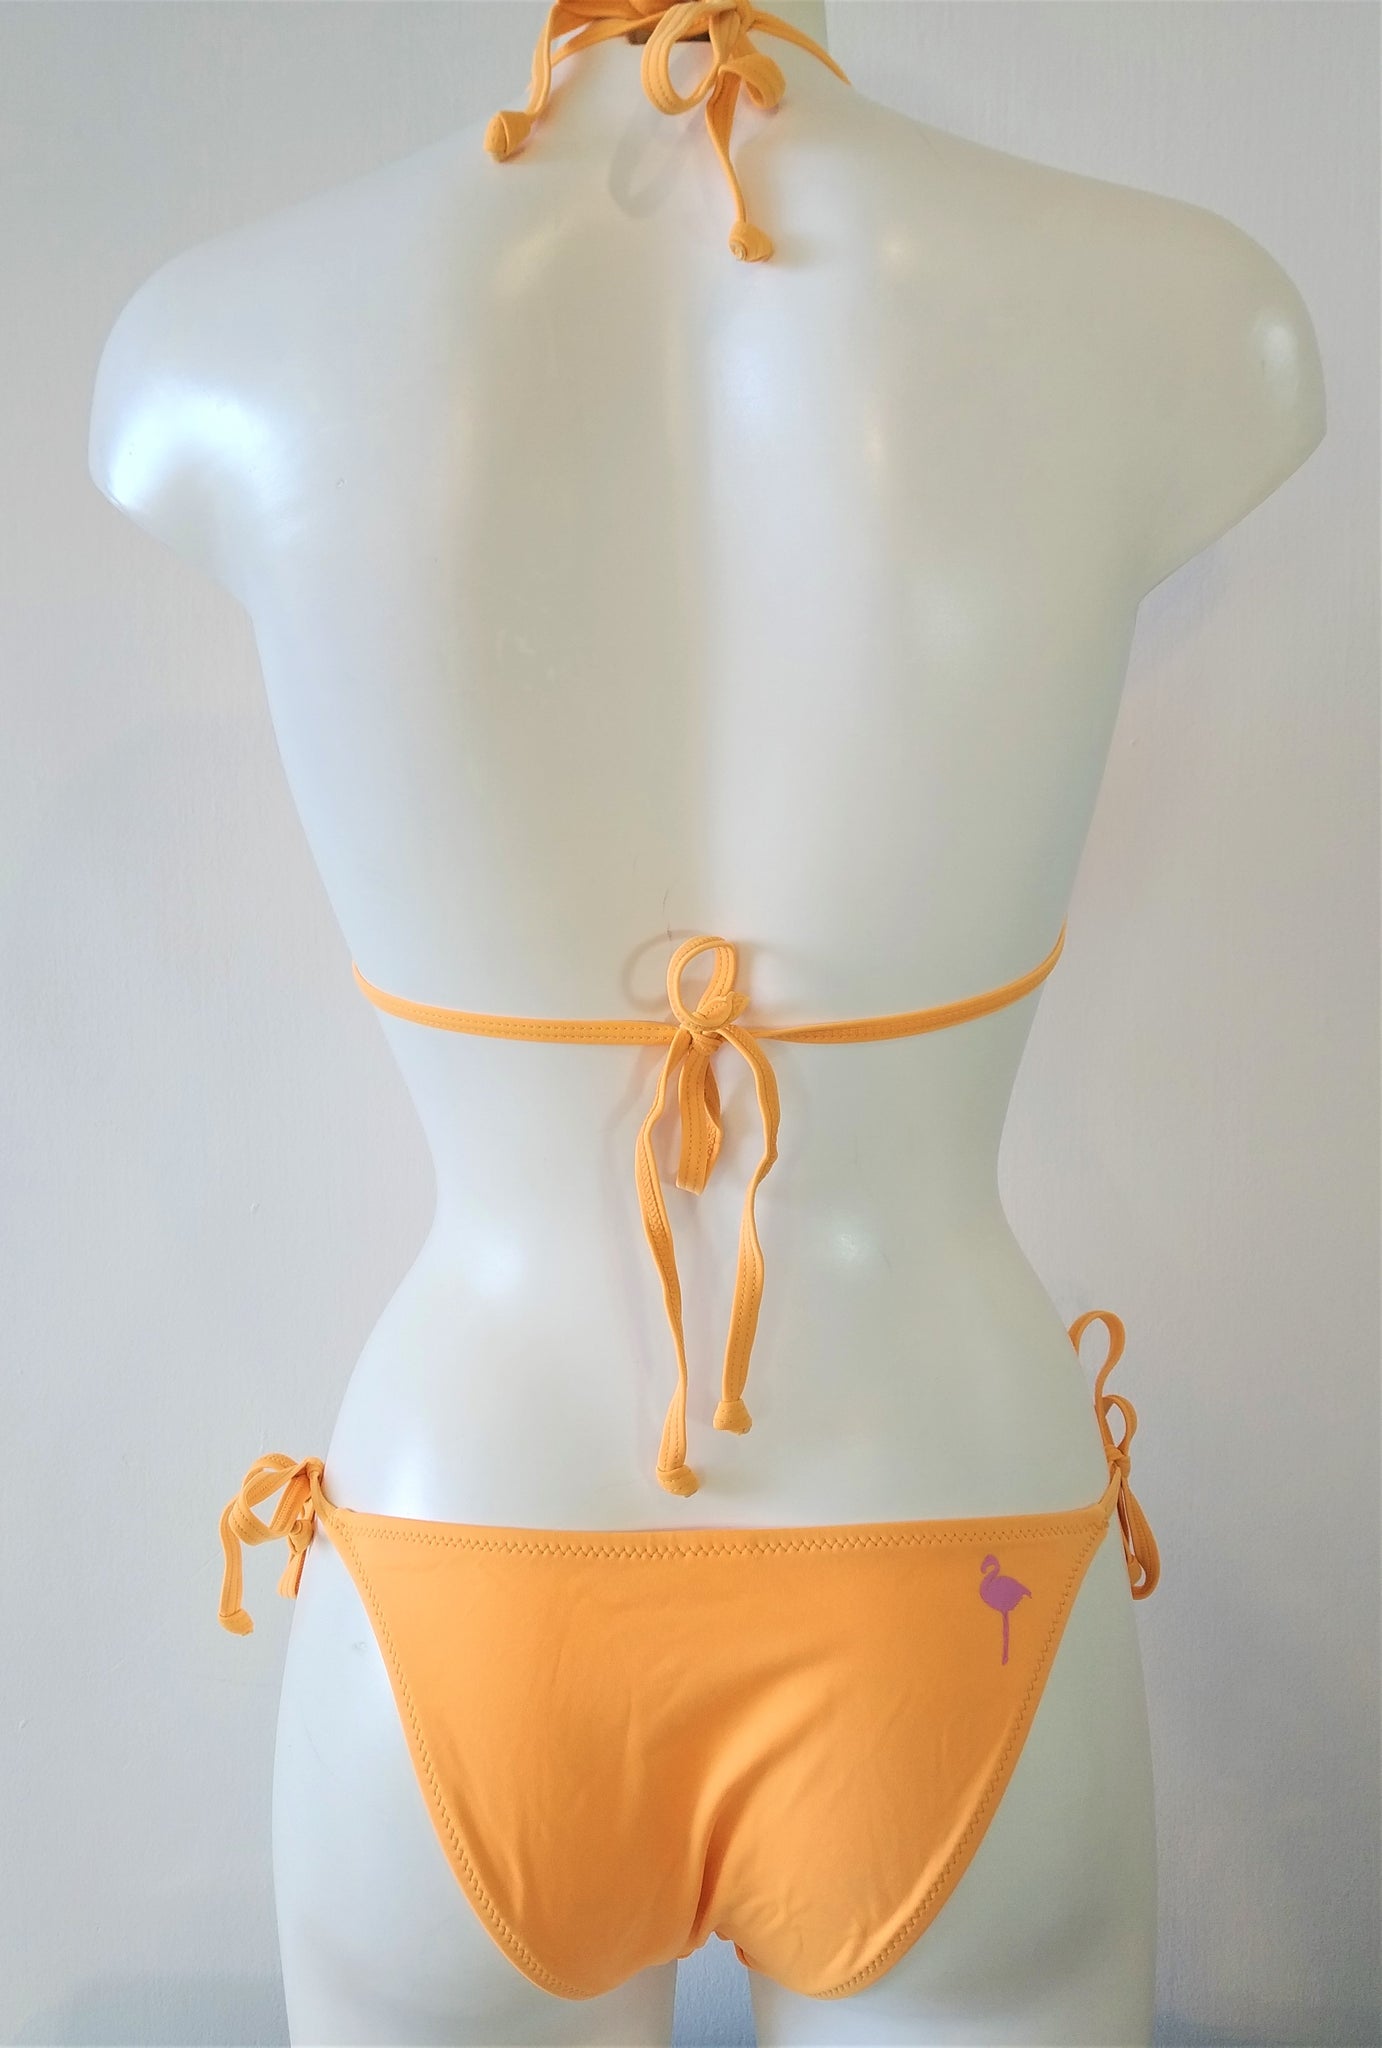 bikinn-triangular bikini bra triangle top swimsuit,maillot de bain triangle,traje de baño triangular